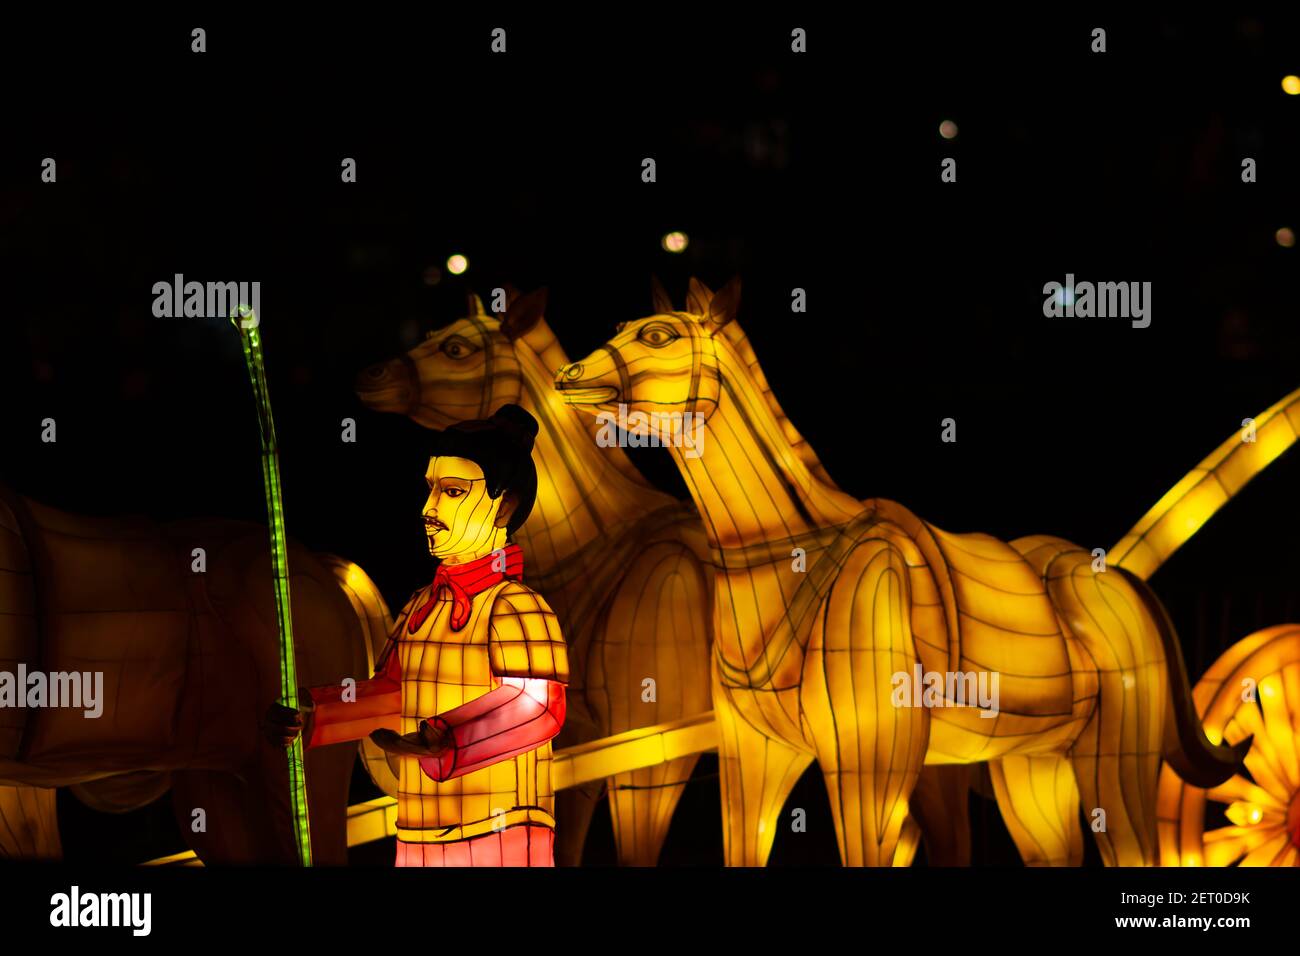 Festival des lanternes chinoises au parc de Limanski. Un homme avec une écharpe rouge, tenant un bâton de bambou, se tient à côté d'une calèche tirée par des chevaux. Banque D'Images